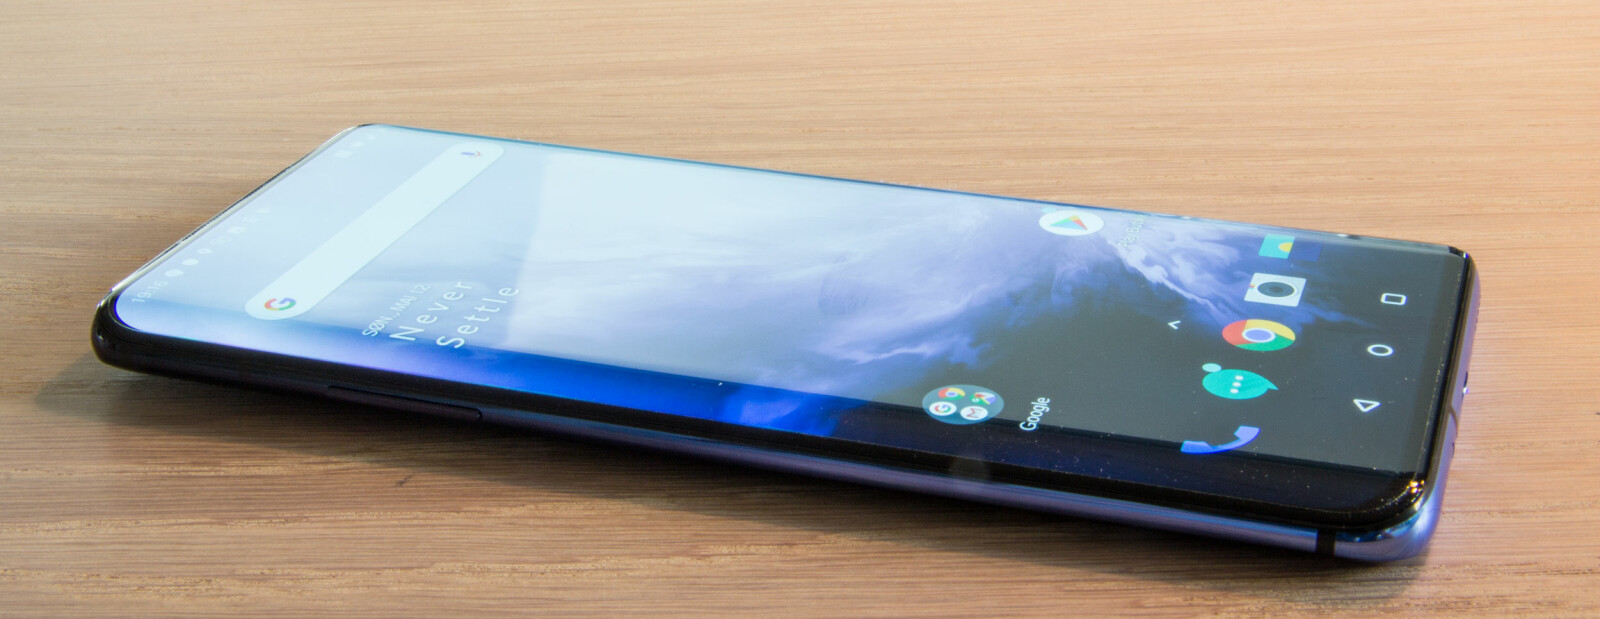 <b>STOR SKJERM:</b> OnePlus 7 Pro har en 6,67 tommers stor AMOLED-skjerm.